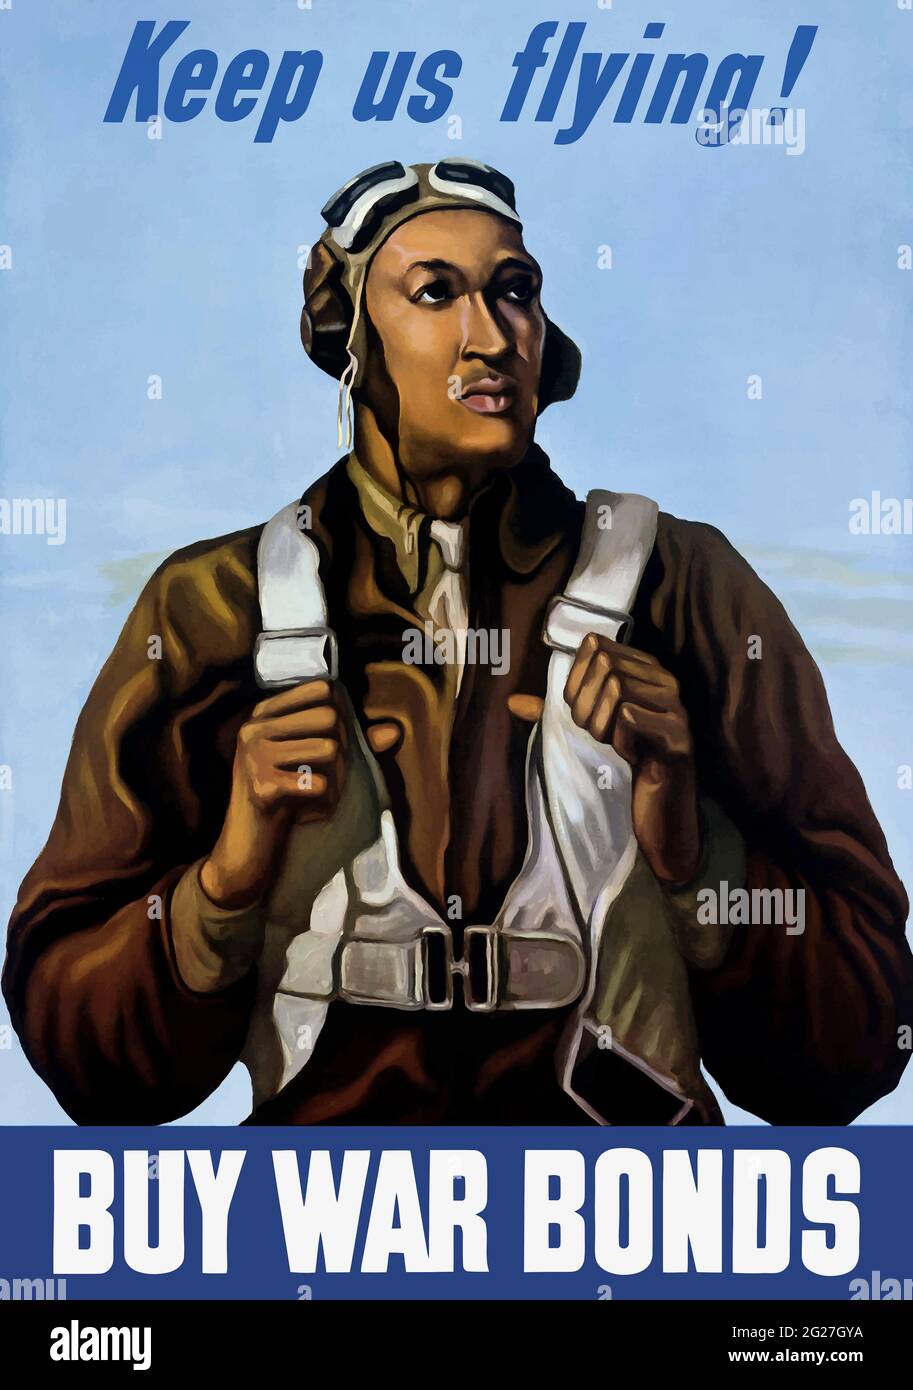 Image de propagande militaire américaine d'un aviateur Tuskegee. Banque D'Images